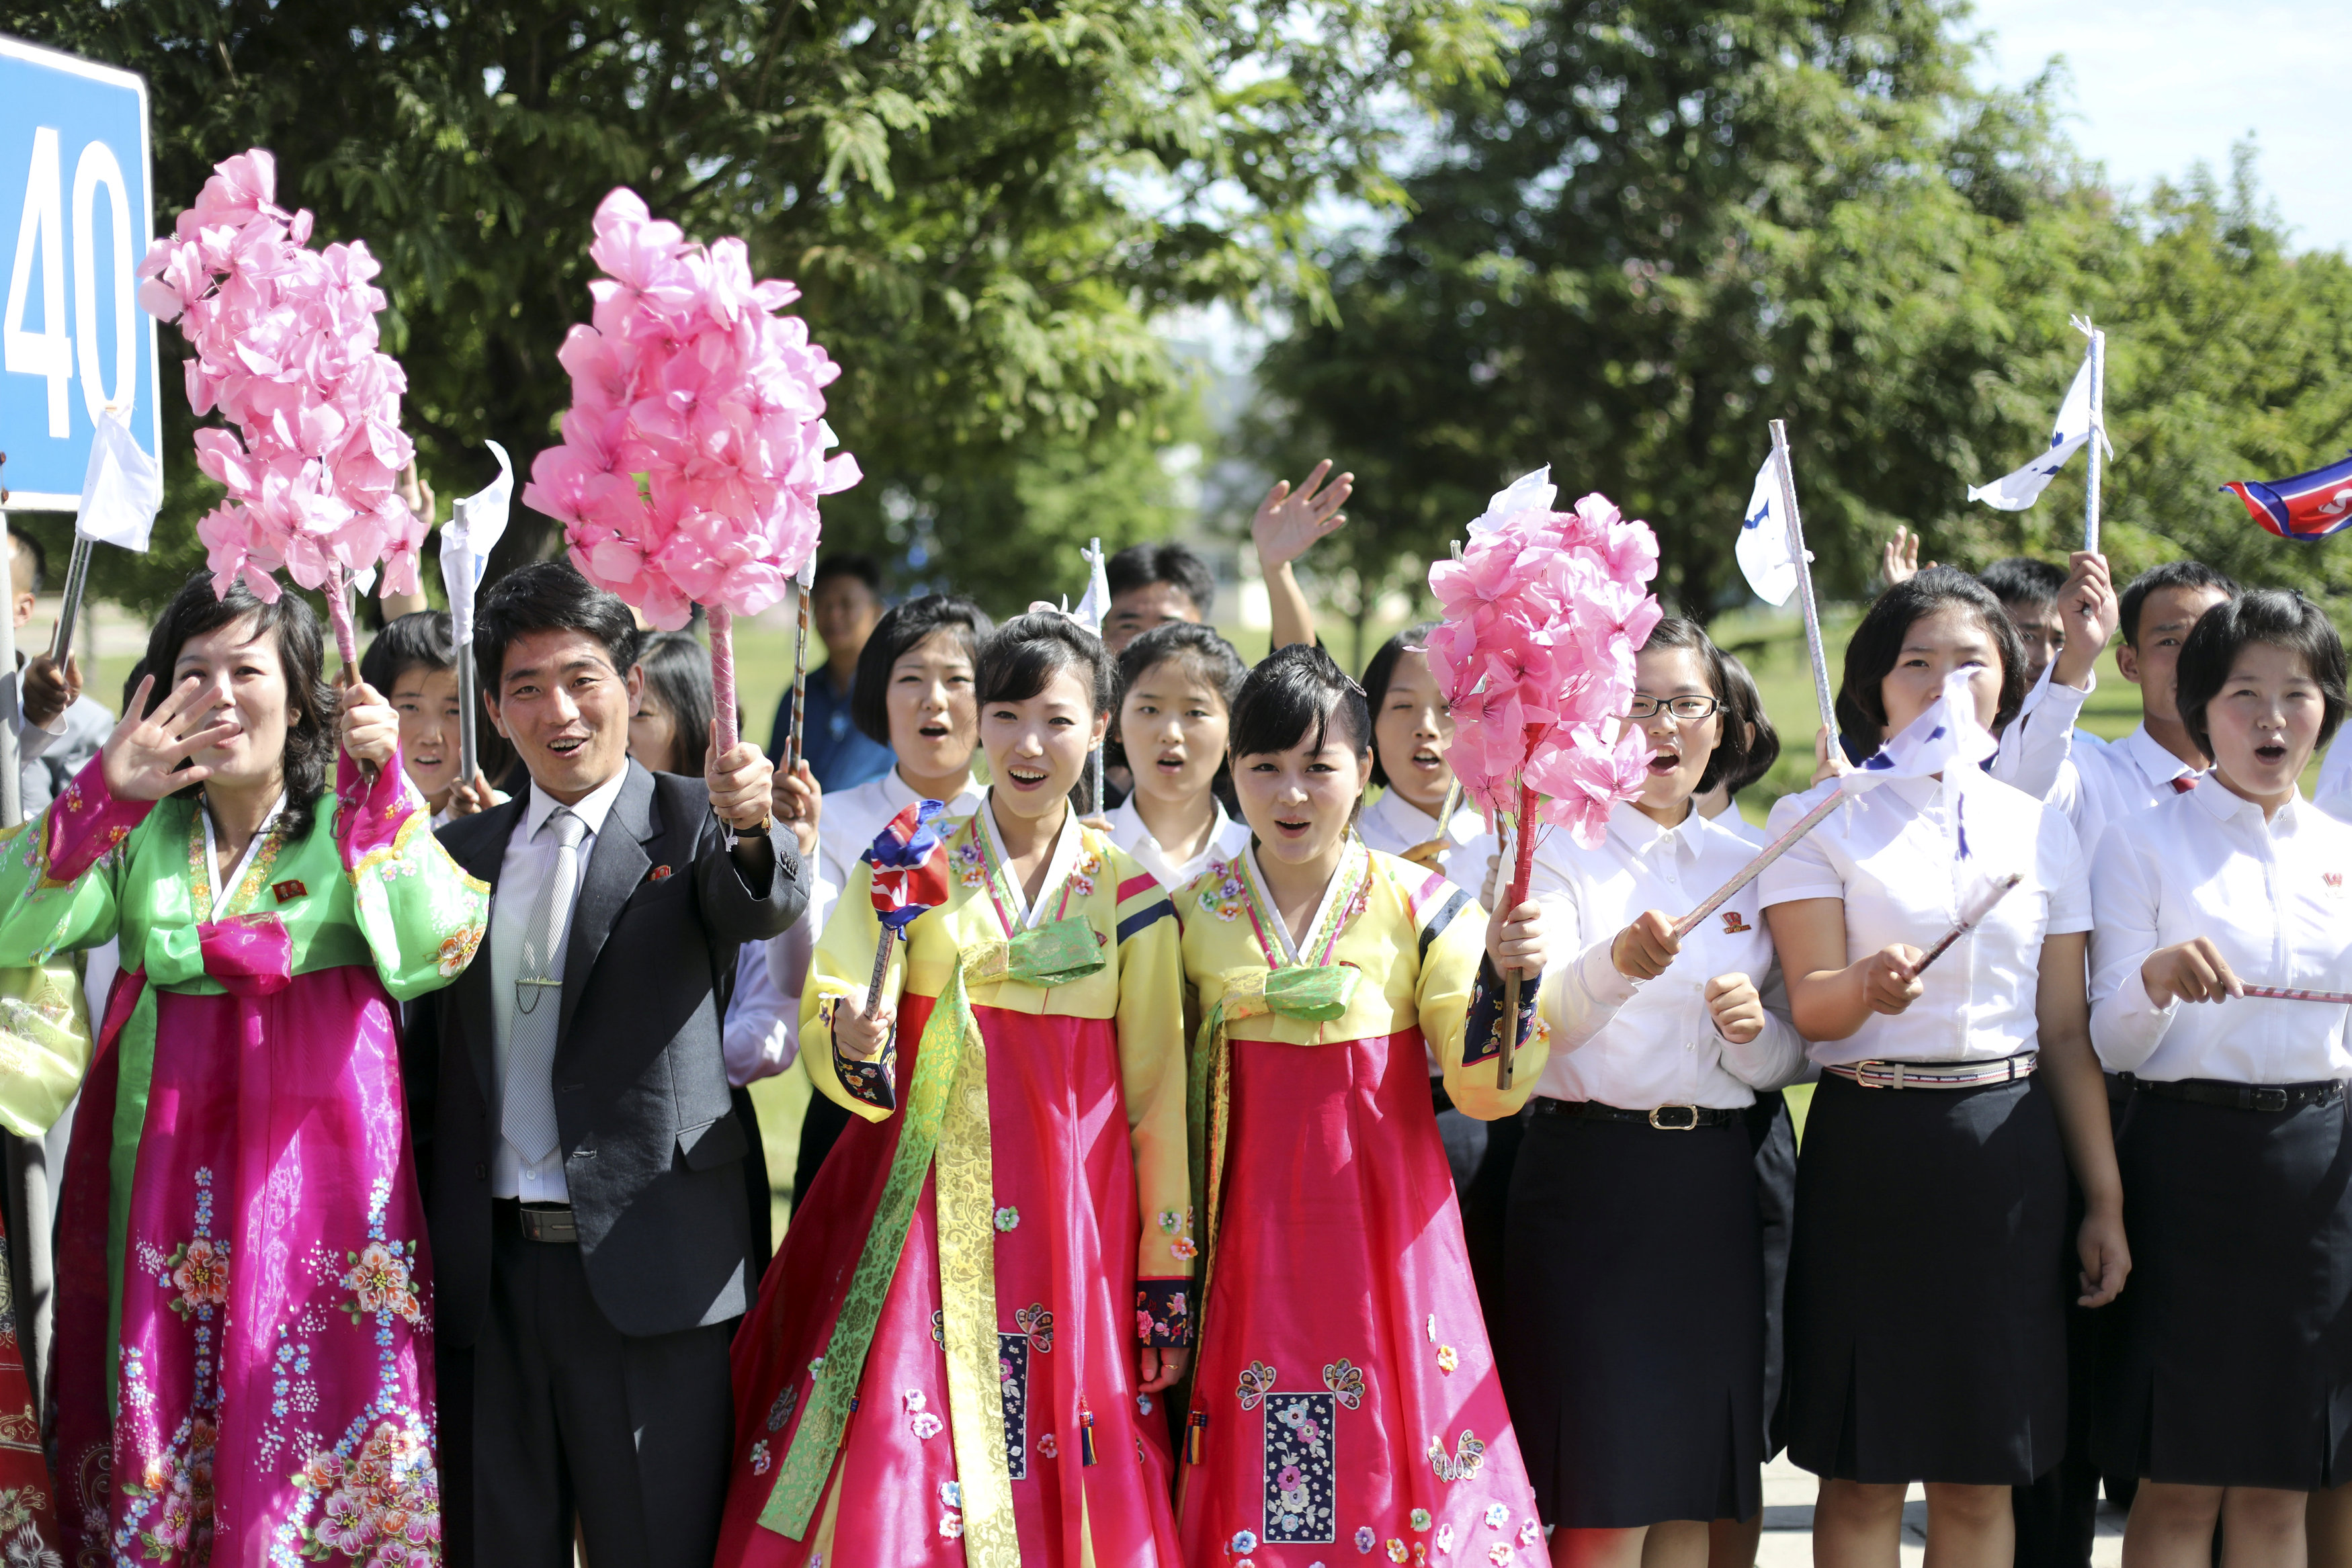 احتفال شعبى بزيارة رئيس كوريا الجنوبية